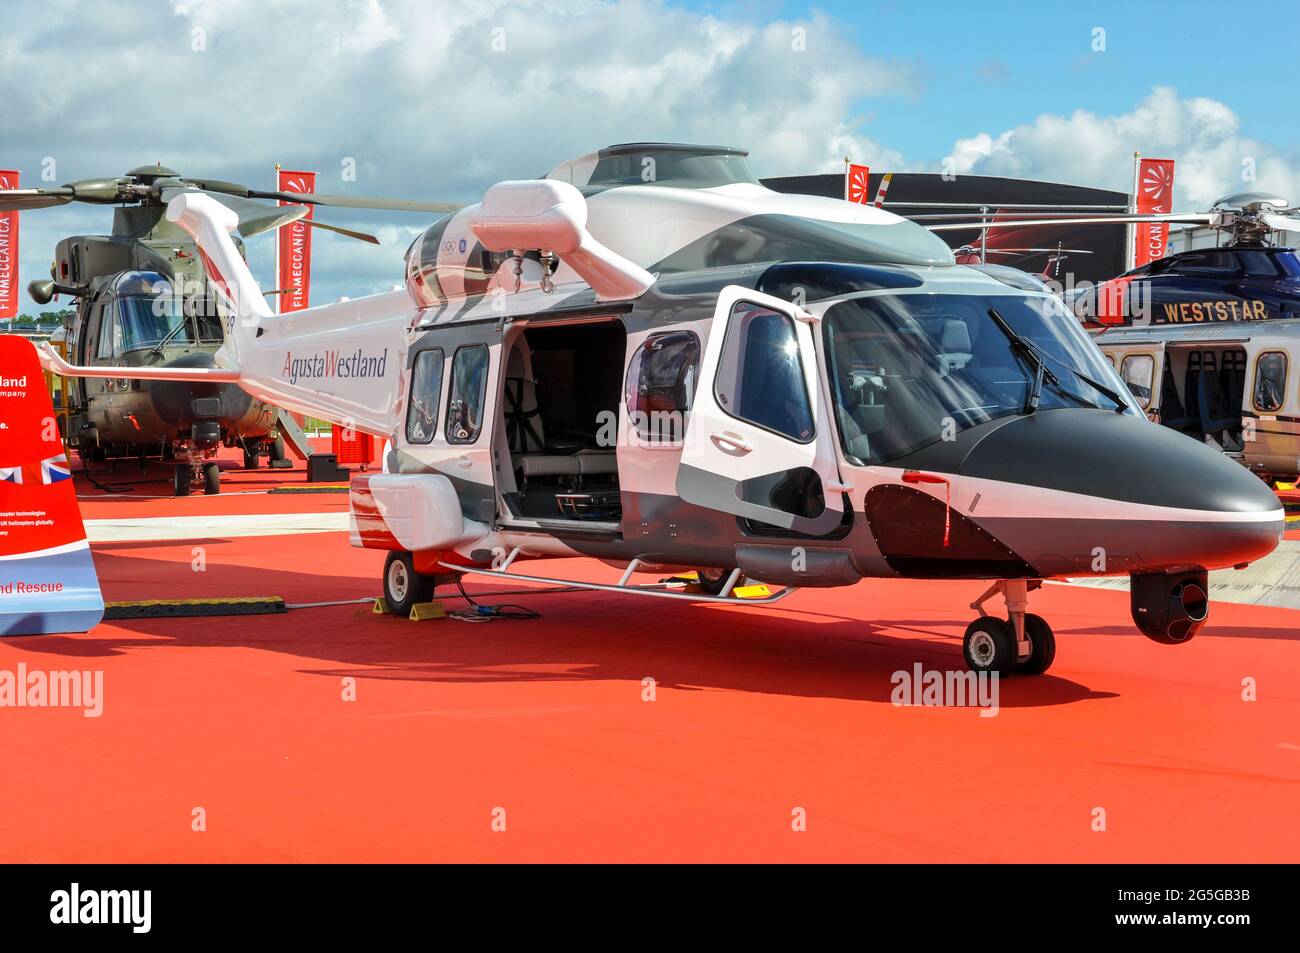 L'hélicoptère AW189 d'AgustaWestland exposé au salon international de l'aéronautique de Farnborough 2012, au Royaume-Uni. Zone d'affichage Finmeccanica Banque D'Images